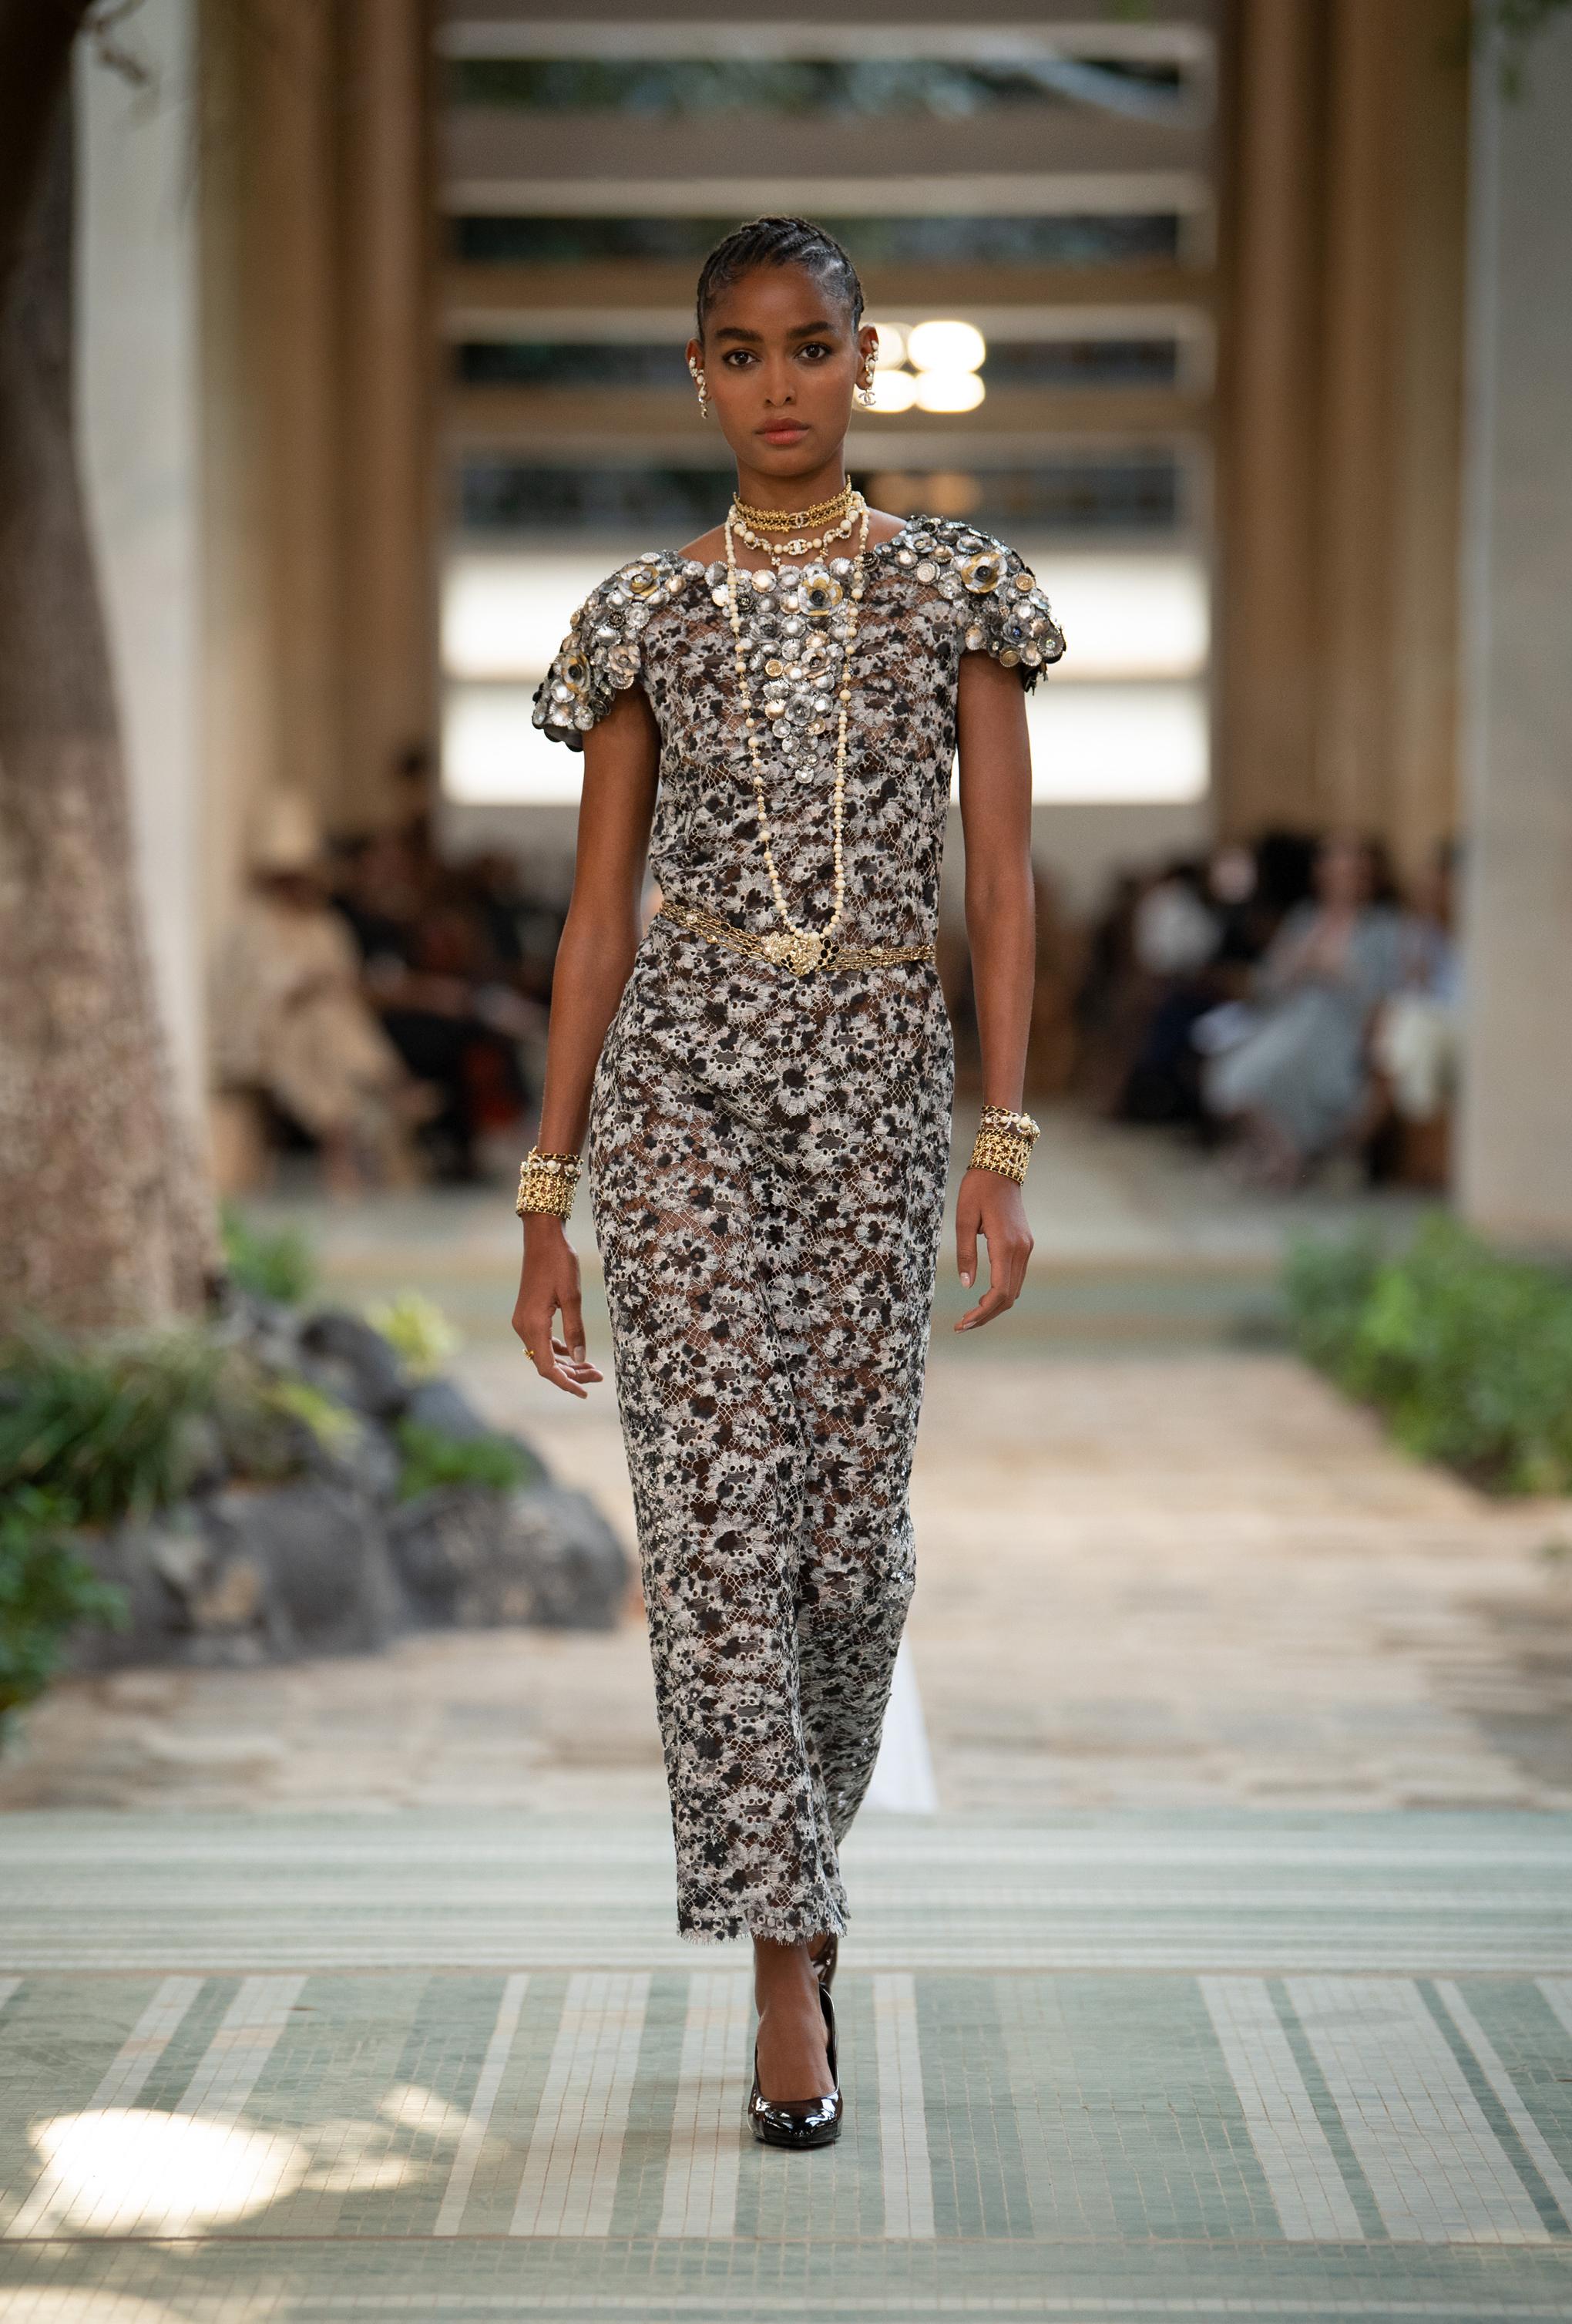 Dakar hosts Chanel's first 'métiers d'art' fashion show in Africa 